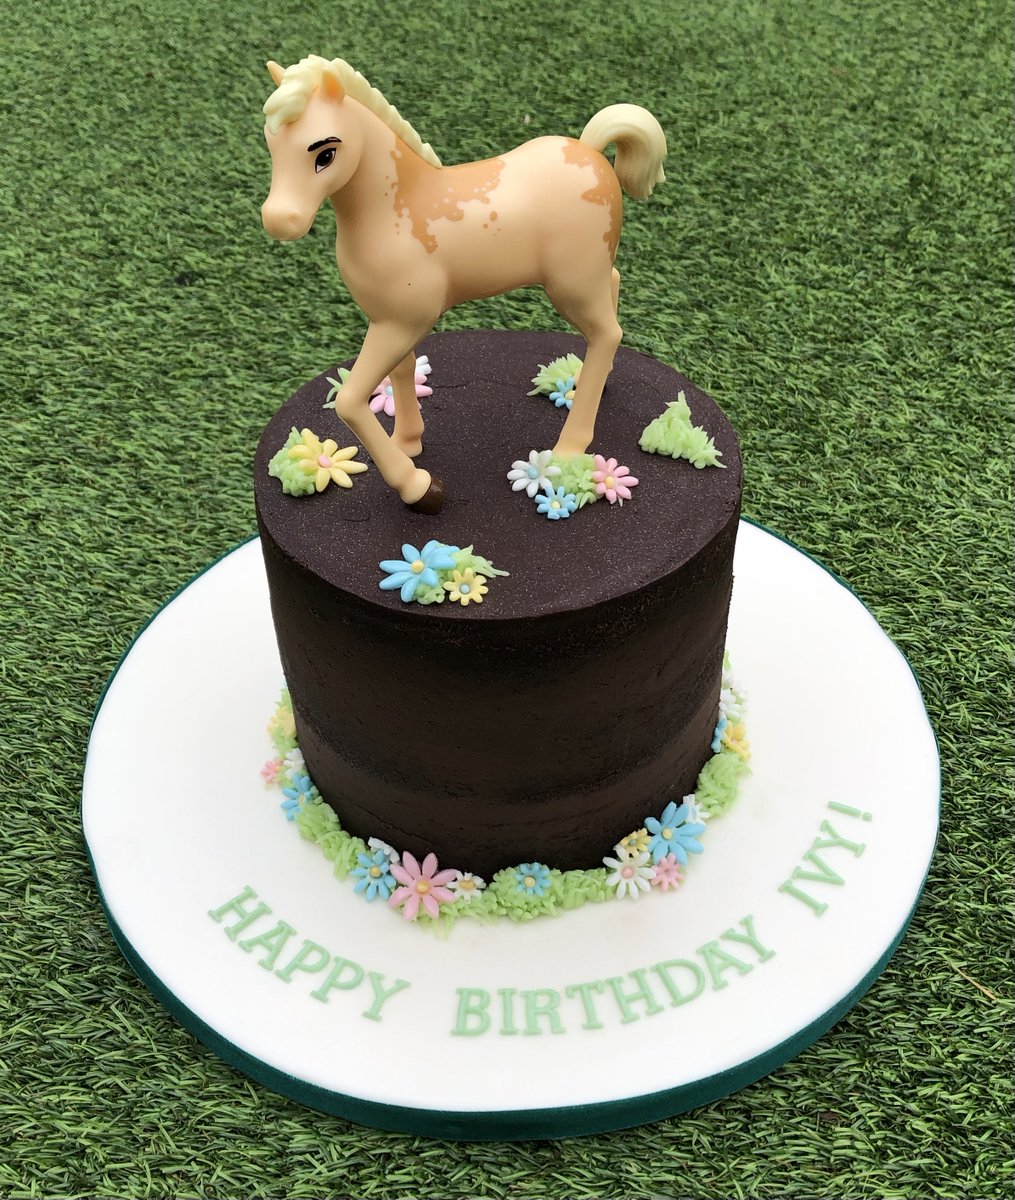 Birthday….

#birthday #chocolate #cake #horse #flowers #buttercream #cakesforkids #cakesforgirls #oxford #luluslittleoxfordkitchen